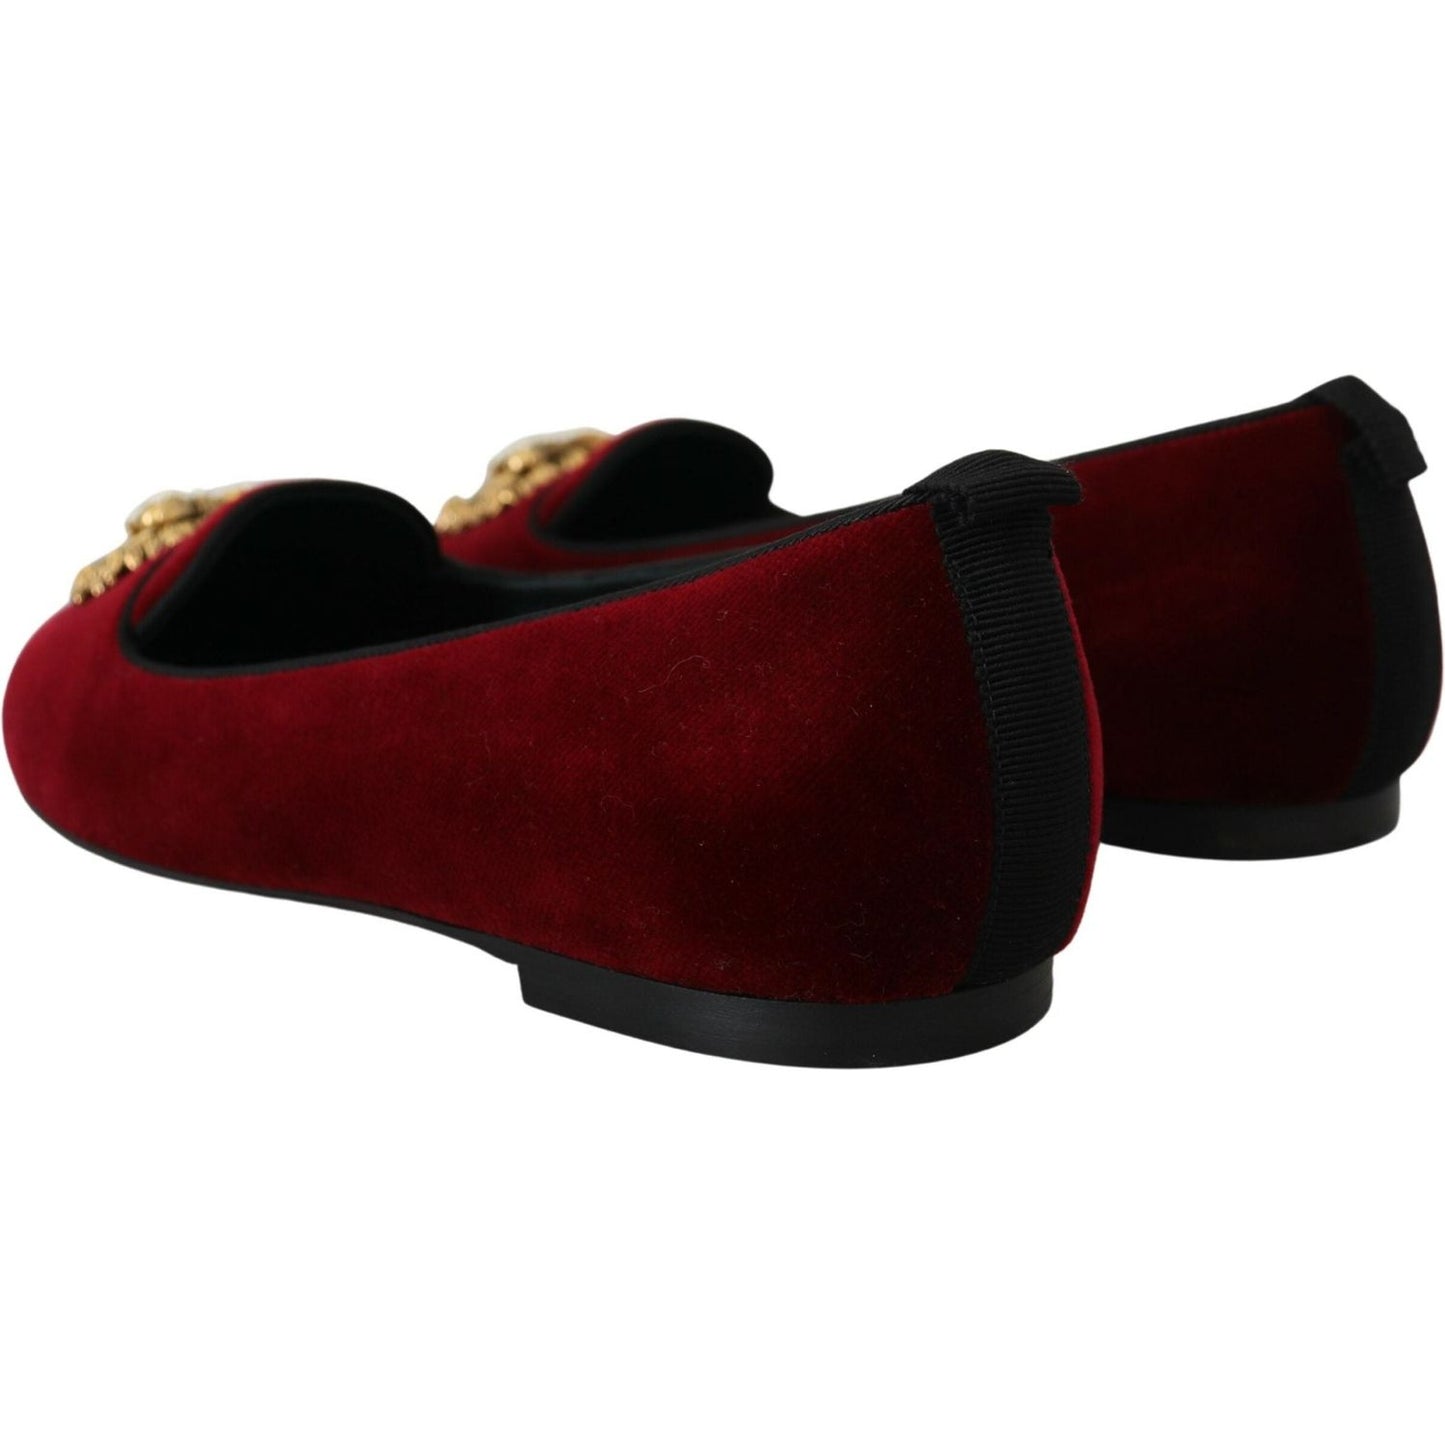 Dolce & Gabbana | Bordeaux Velvet Devotion Loafers| McRichard Designer Brands   